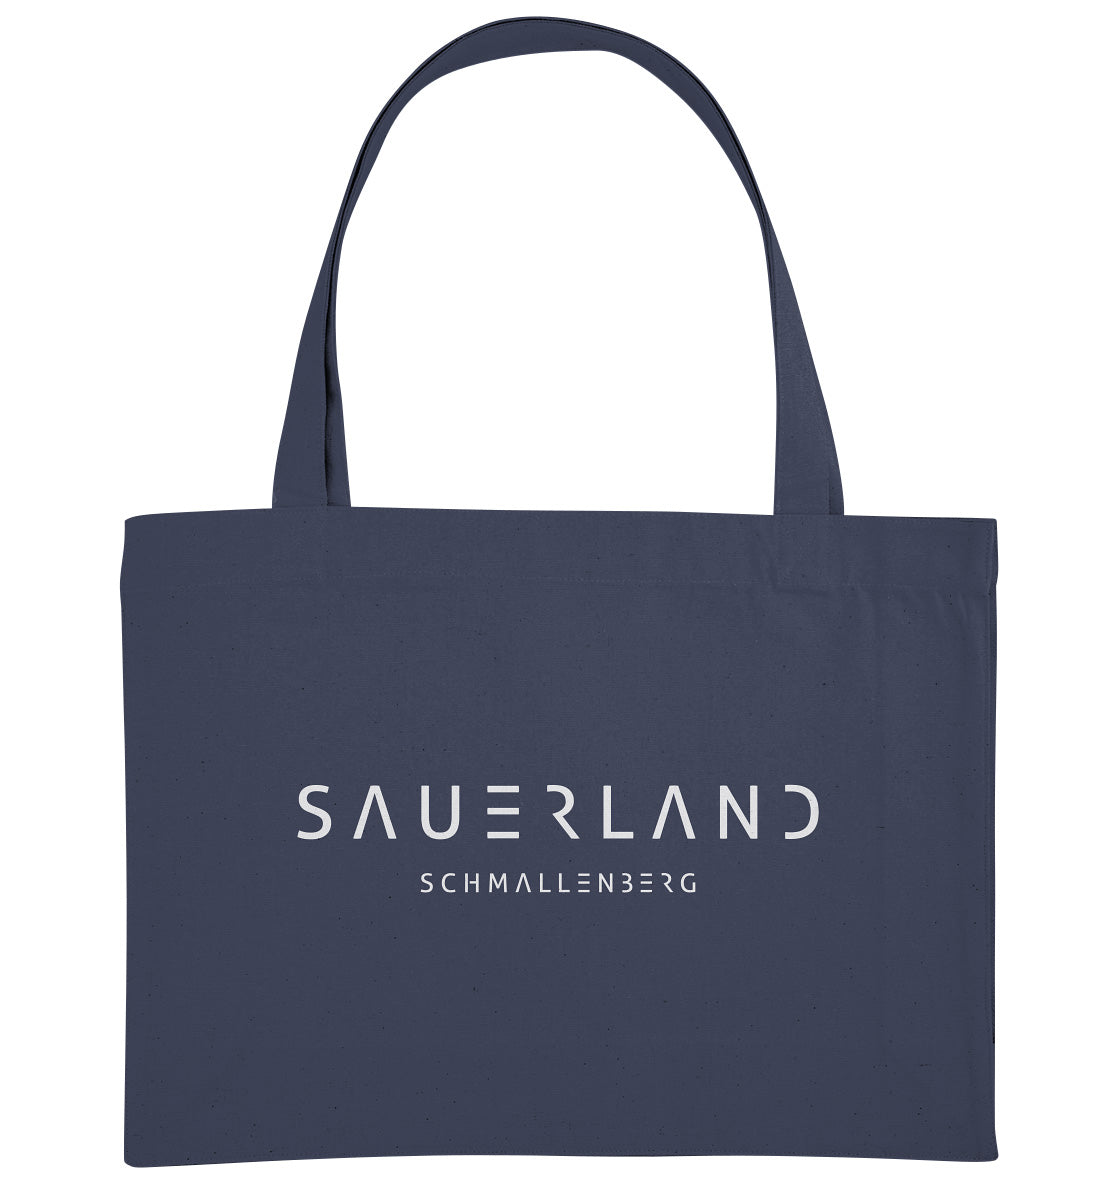 Dunkelblaue Umhängetasche mit dem modernen Sauerland Schriftzug und dem Stadtnamen Schmallenberg in weiß bedruckt.